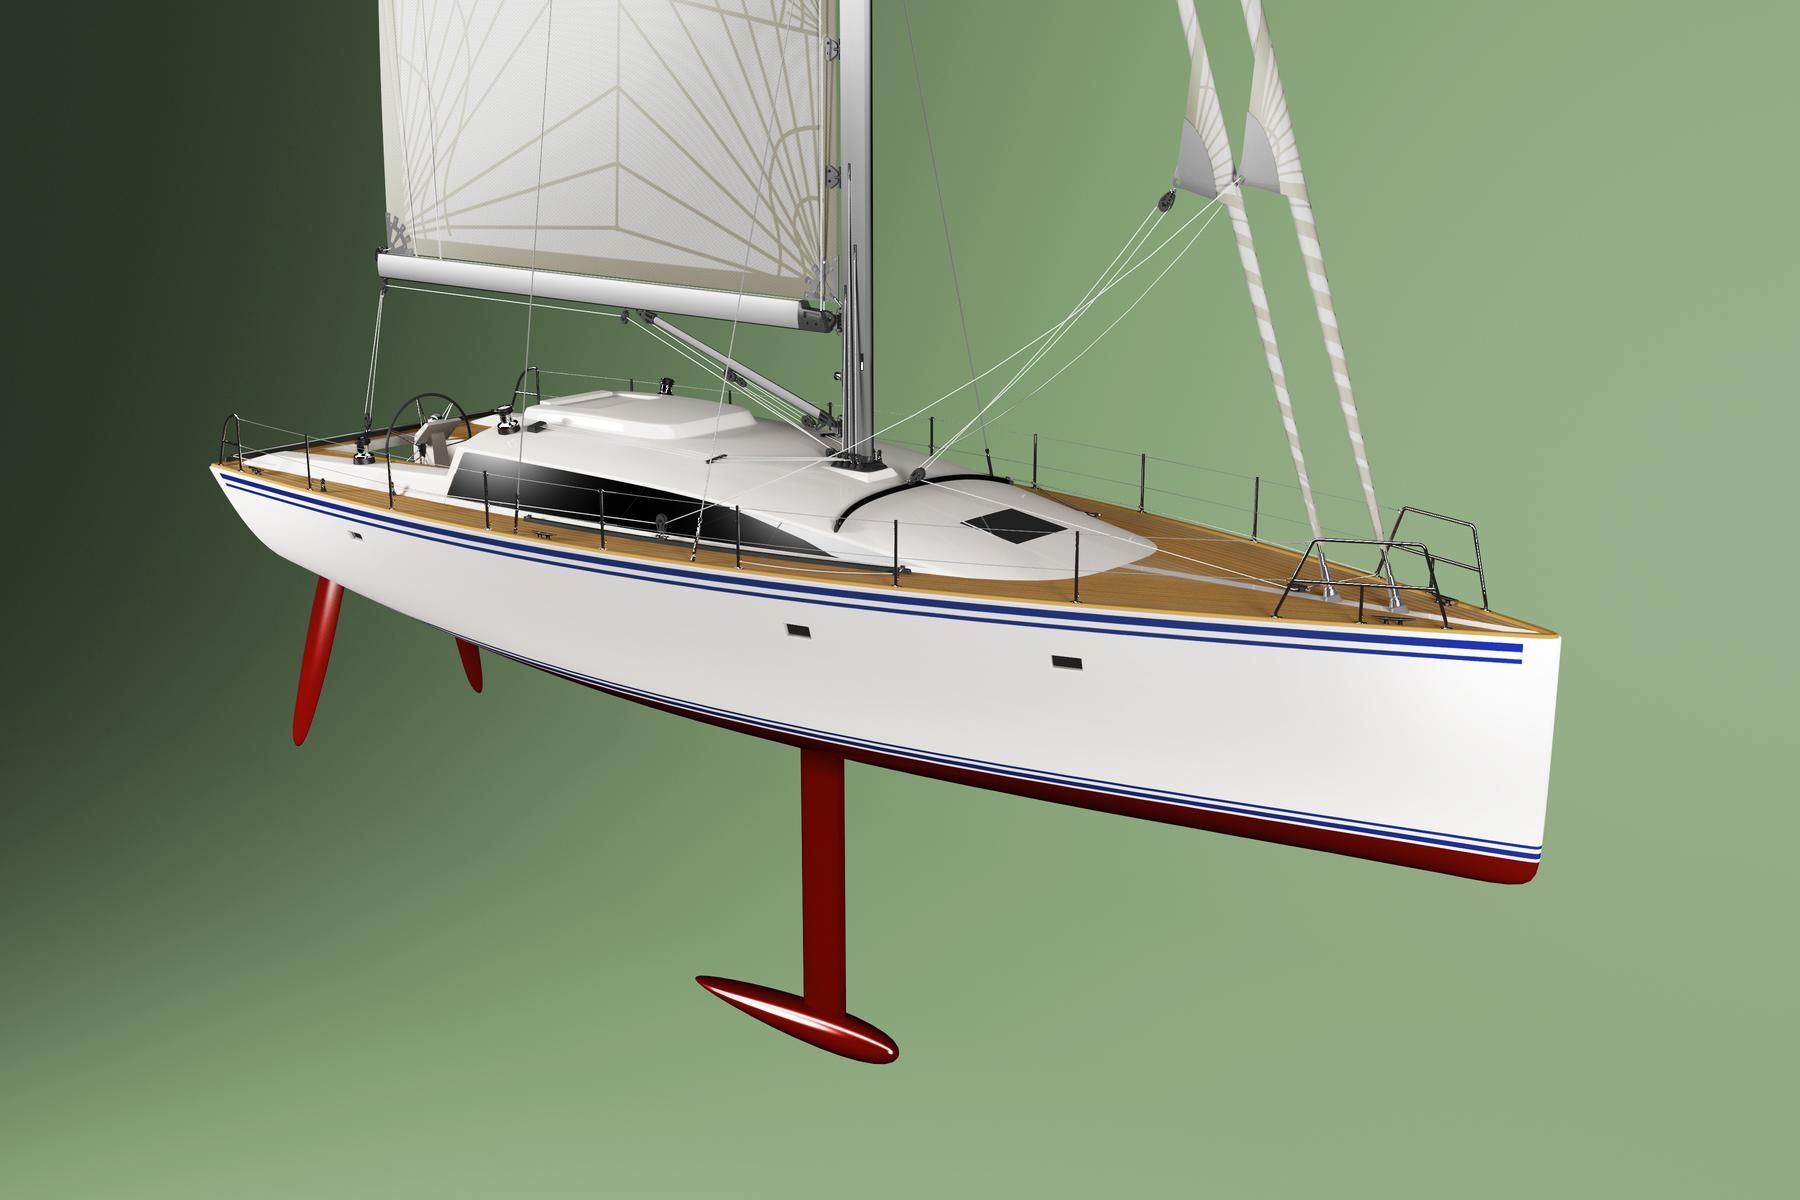 40 foot sailboat plans